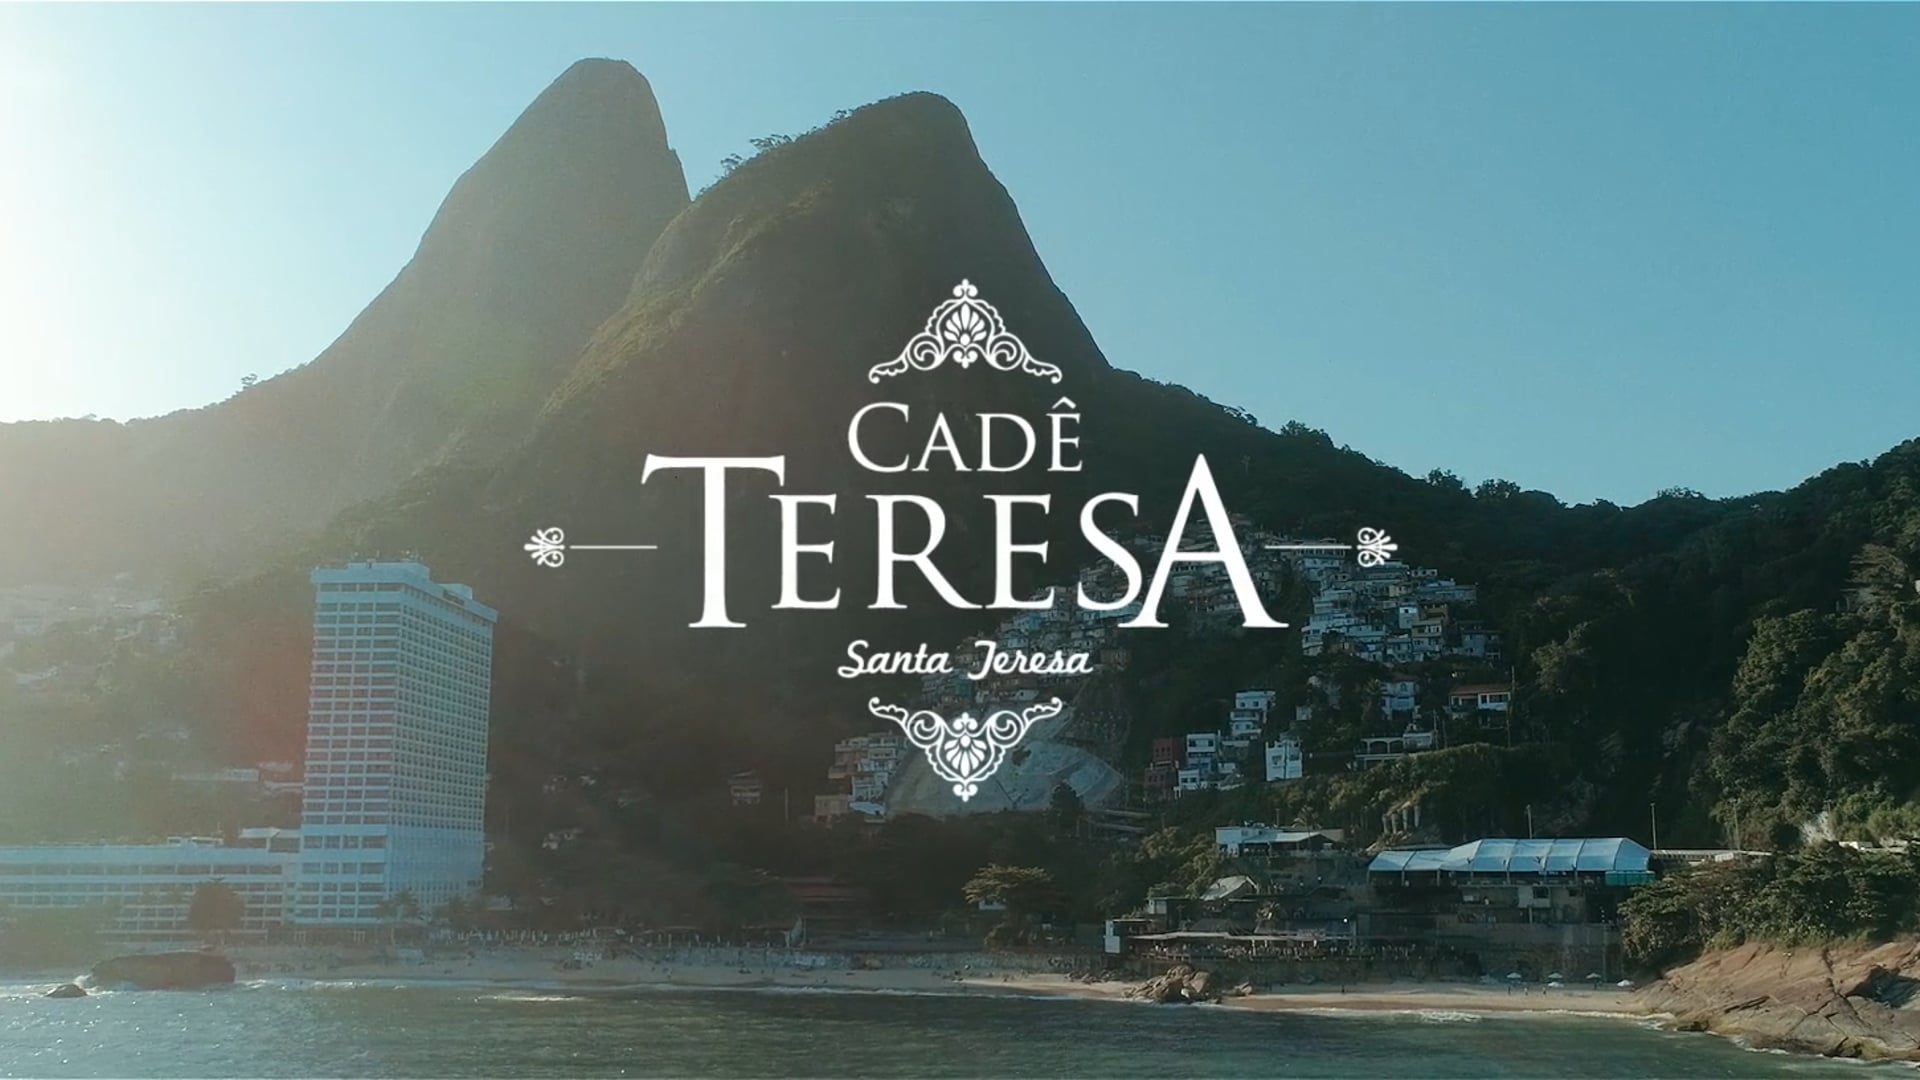 Cade Teresa 2019 @ Faro Beach Club